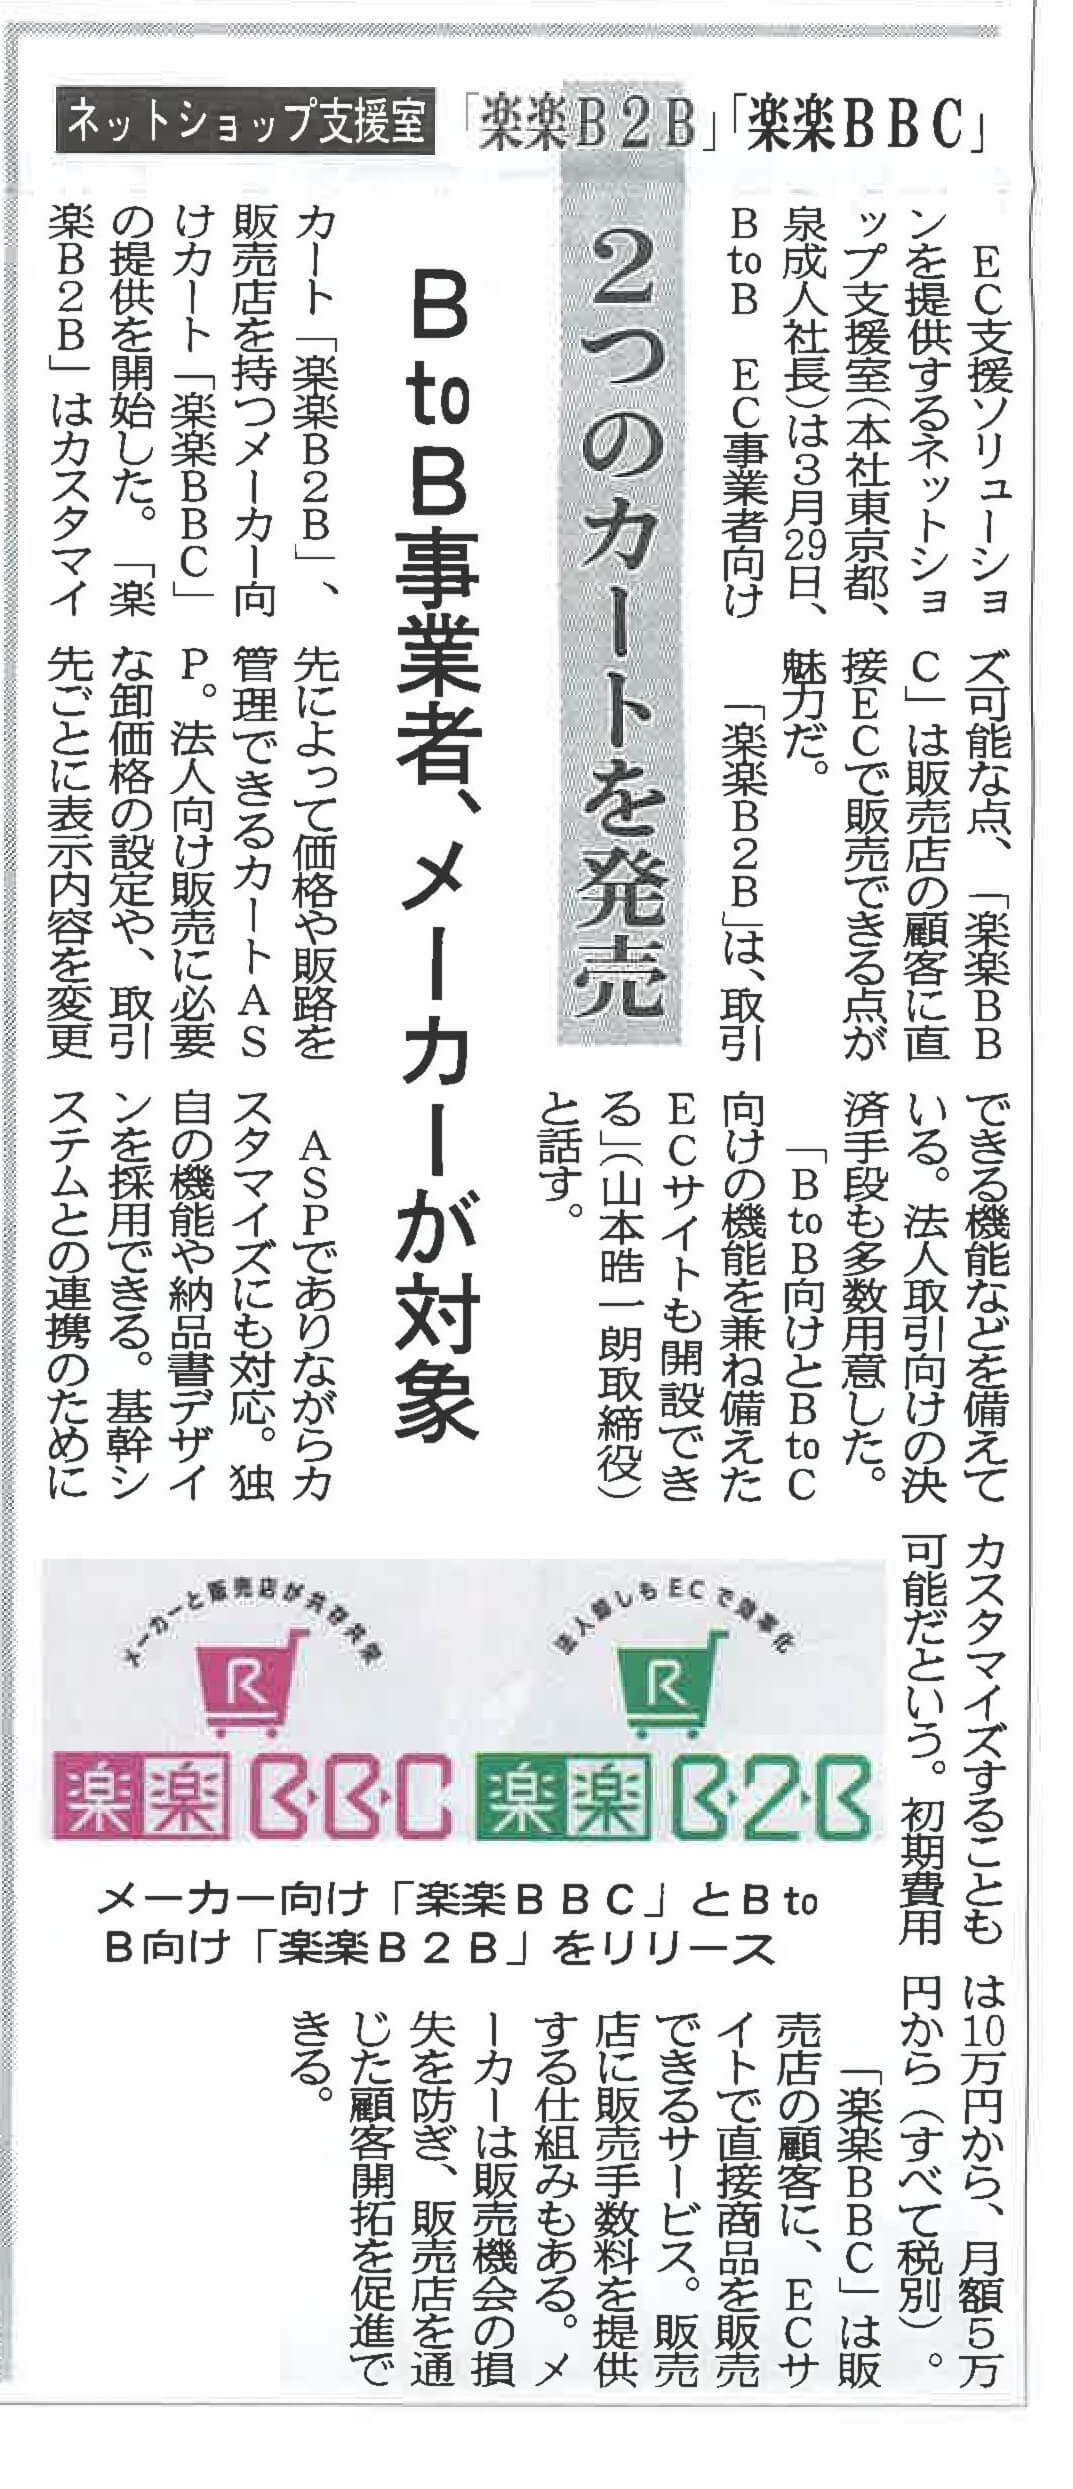 株式会社ネットショップ支援室の日本ネット経済新聞に掲載された『楽楽B2B』『楽楽BBC』の画像